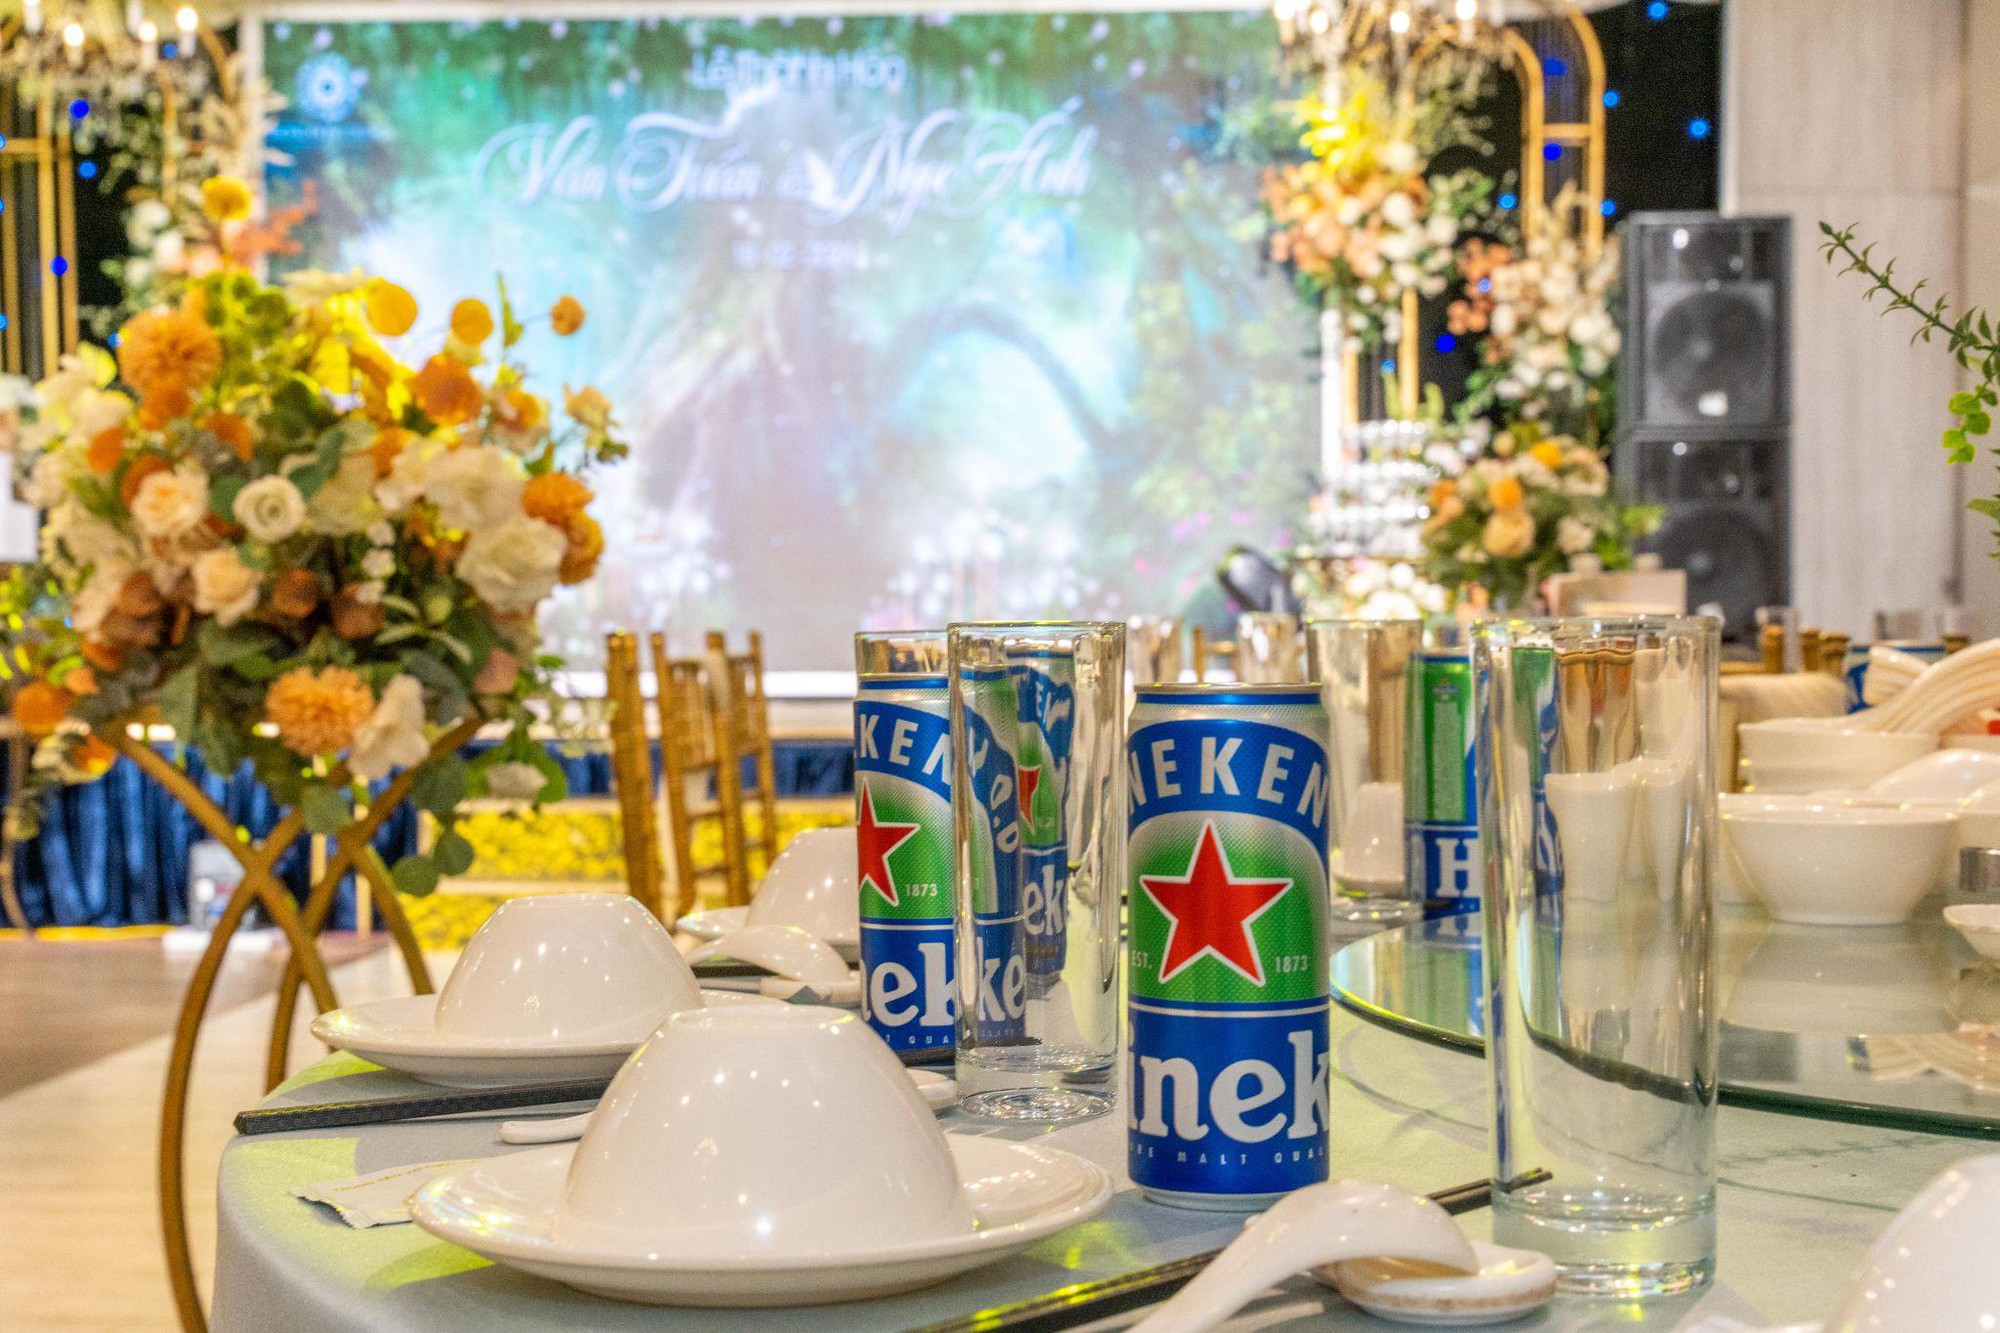 Heineken 0.0 “bắt tay” cùng trung tâm tiệc cưới Trống Đồng Palace  dẫn đầu xu hướng “tiệc không cồn” – Làm đẹp